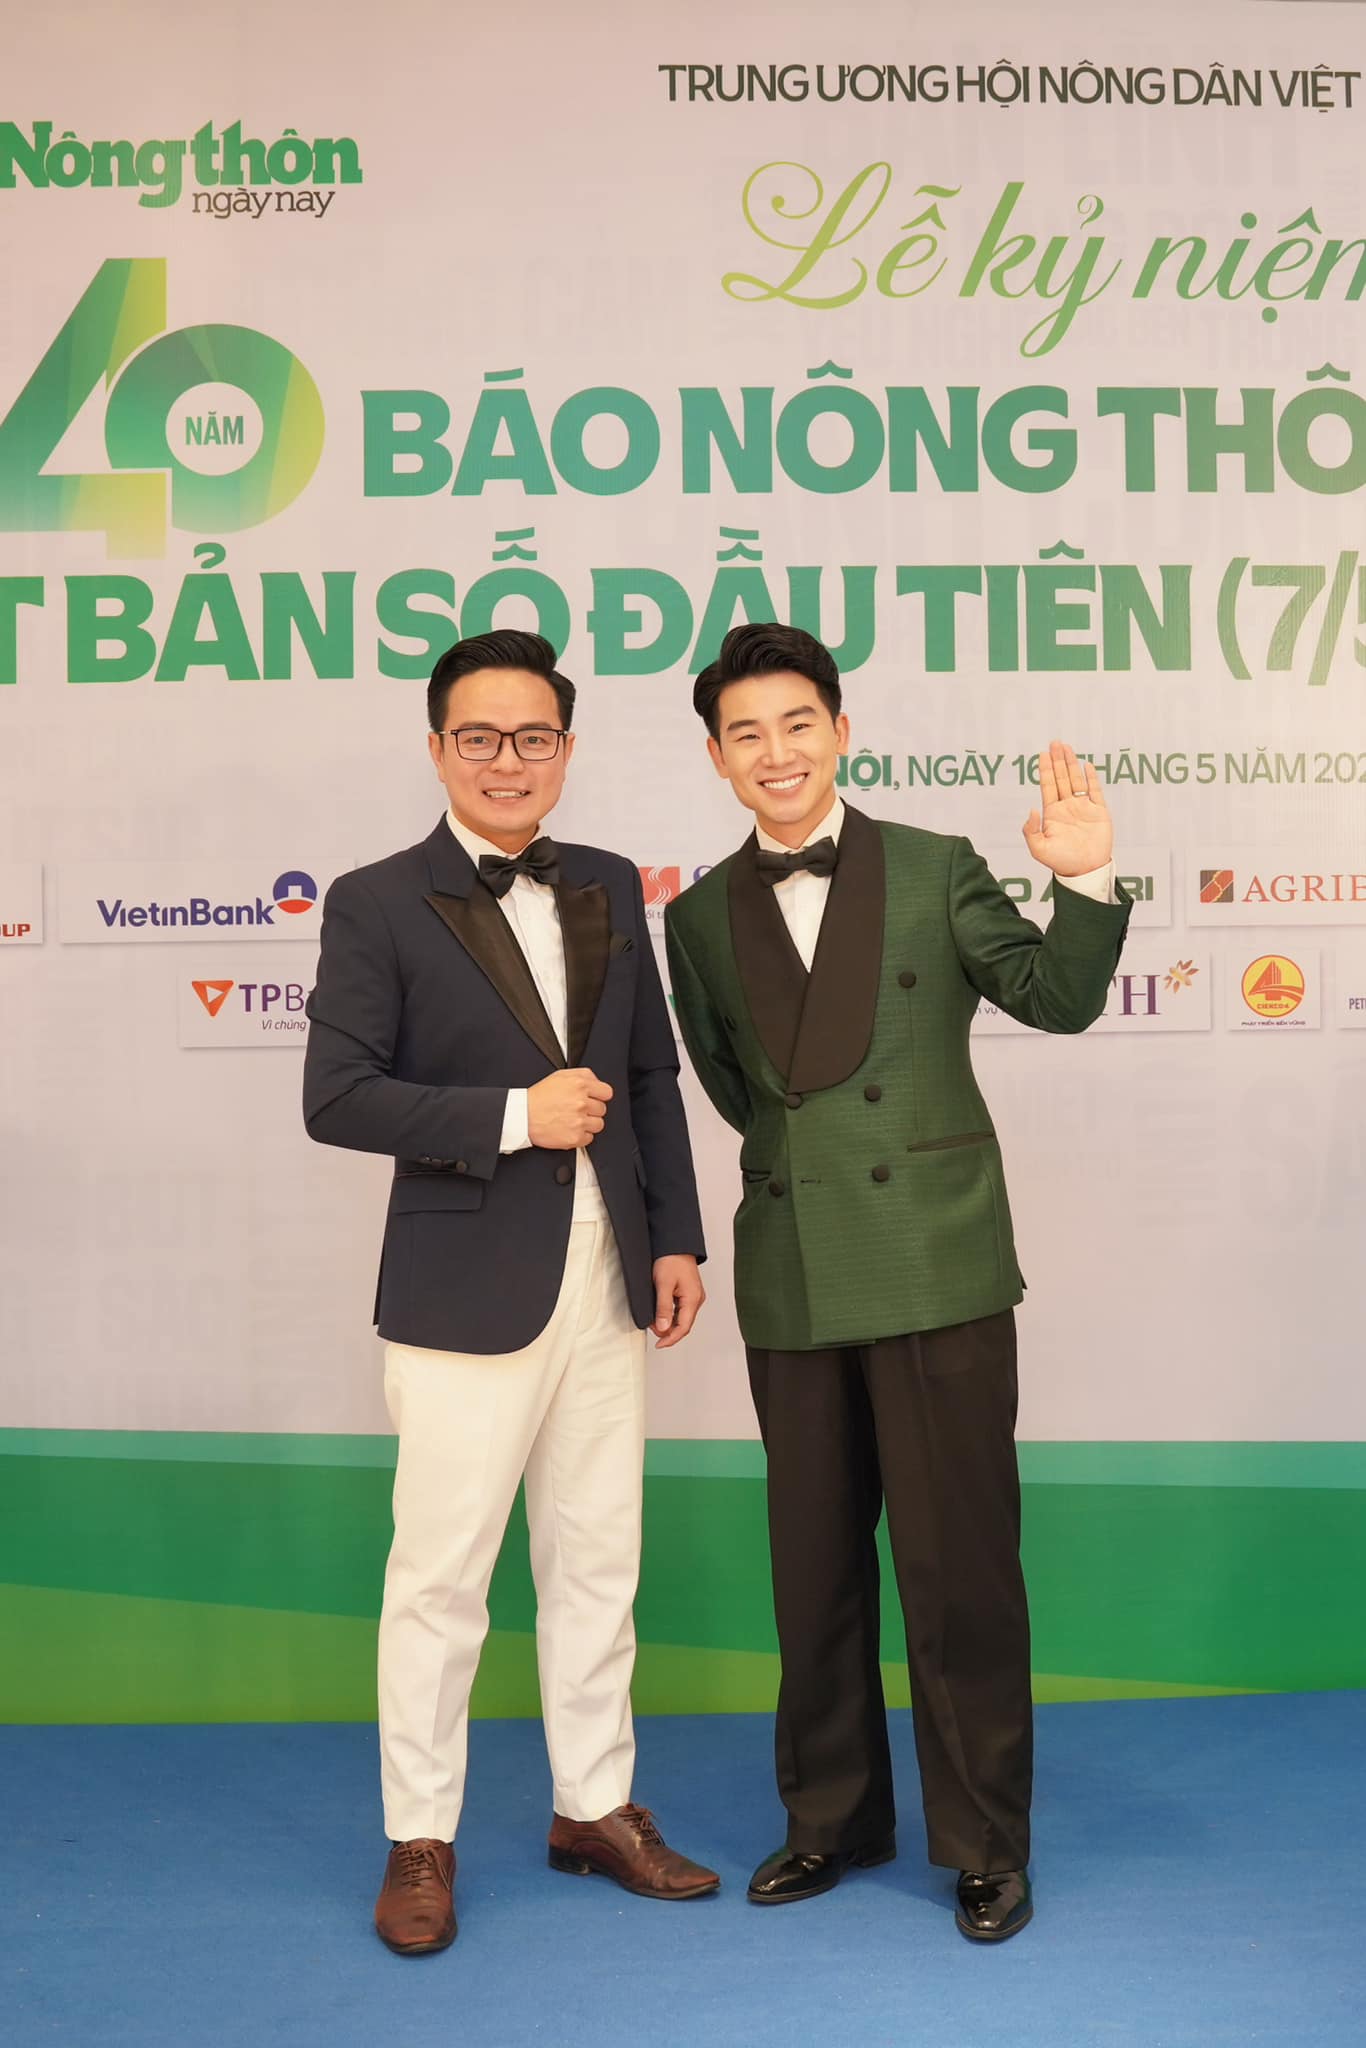 Ca sĩ Tuấn Dương gây ấn tượng với ca khúc nhạc sĩ Nguyễn Vĩnh Tiến sáng tác tặng báo Nông thôn Ngày nay- Ảnh 2.